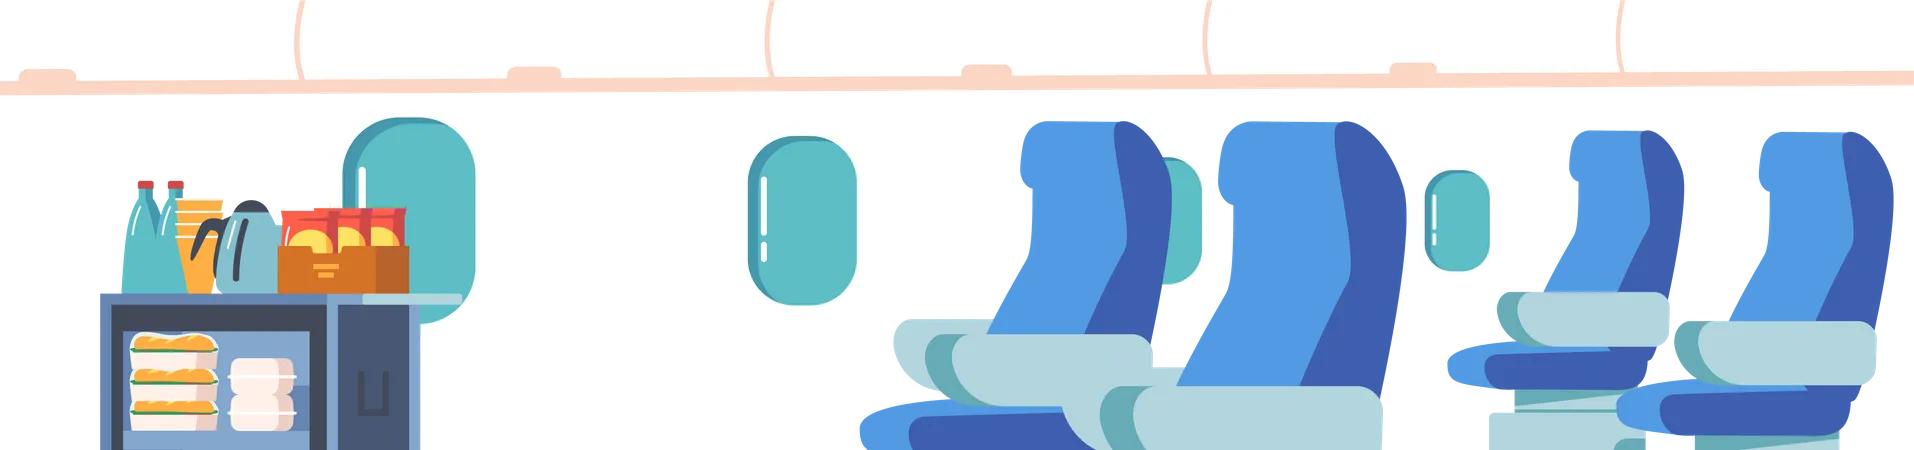 Interior del avión vacío  Ilustración